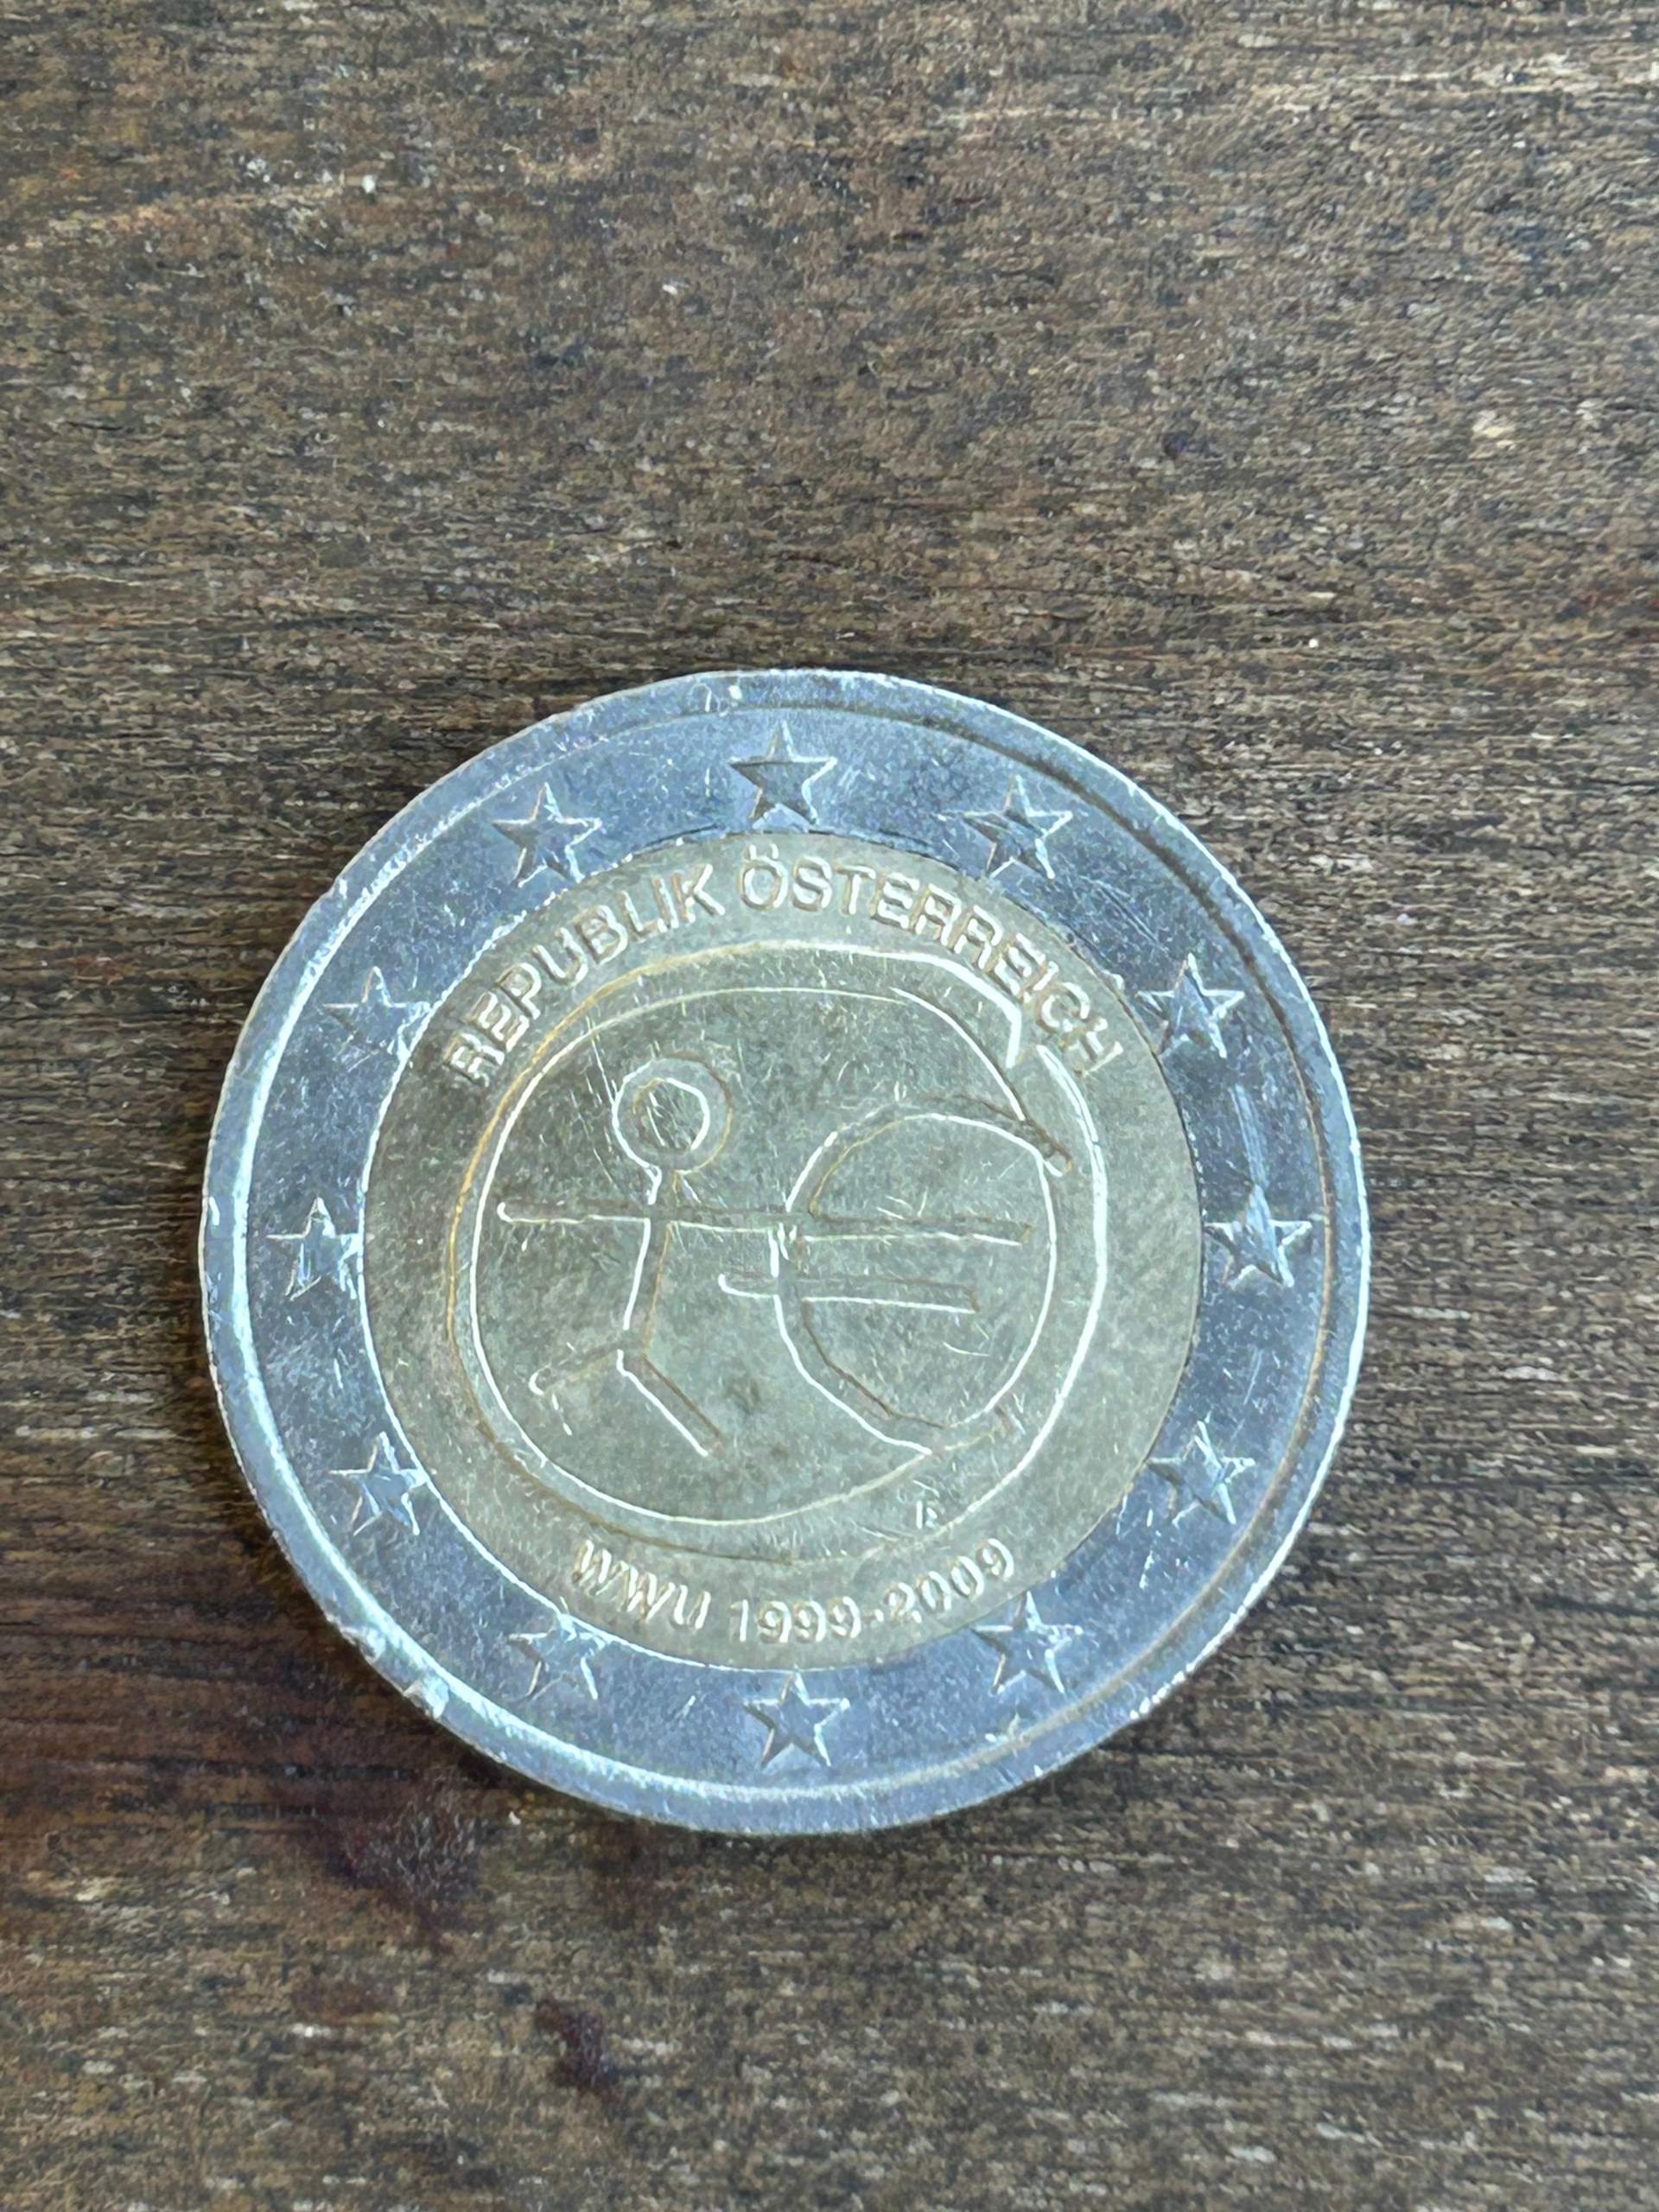 Ist diese Münze wertvoll? (Geld, Wert, Euro)